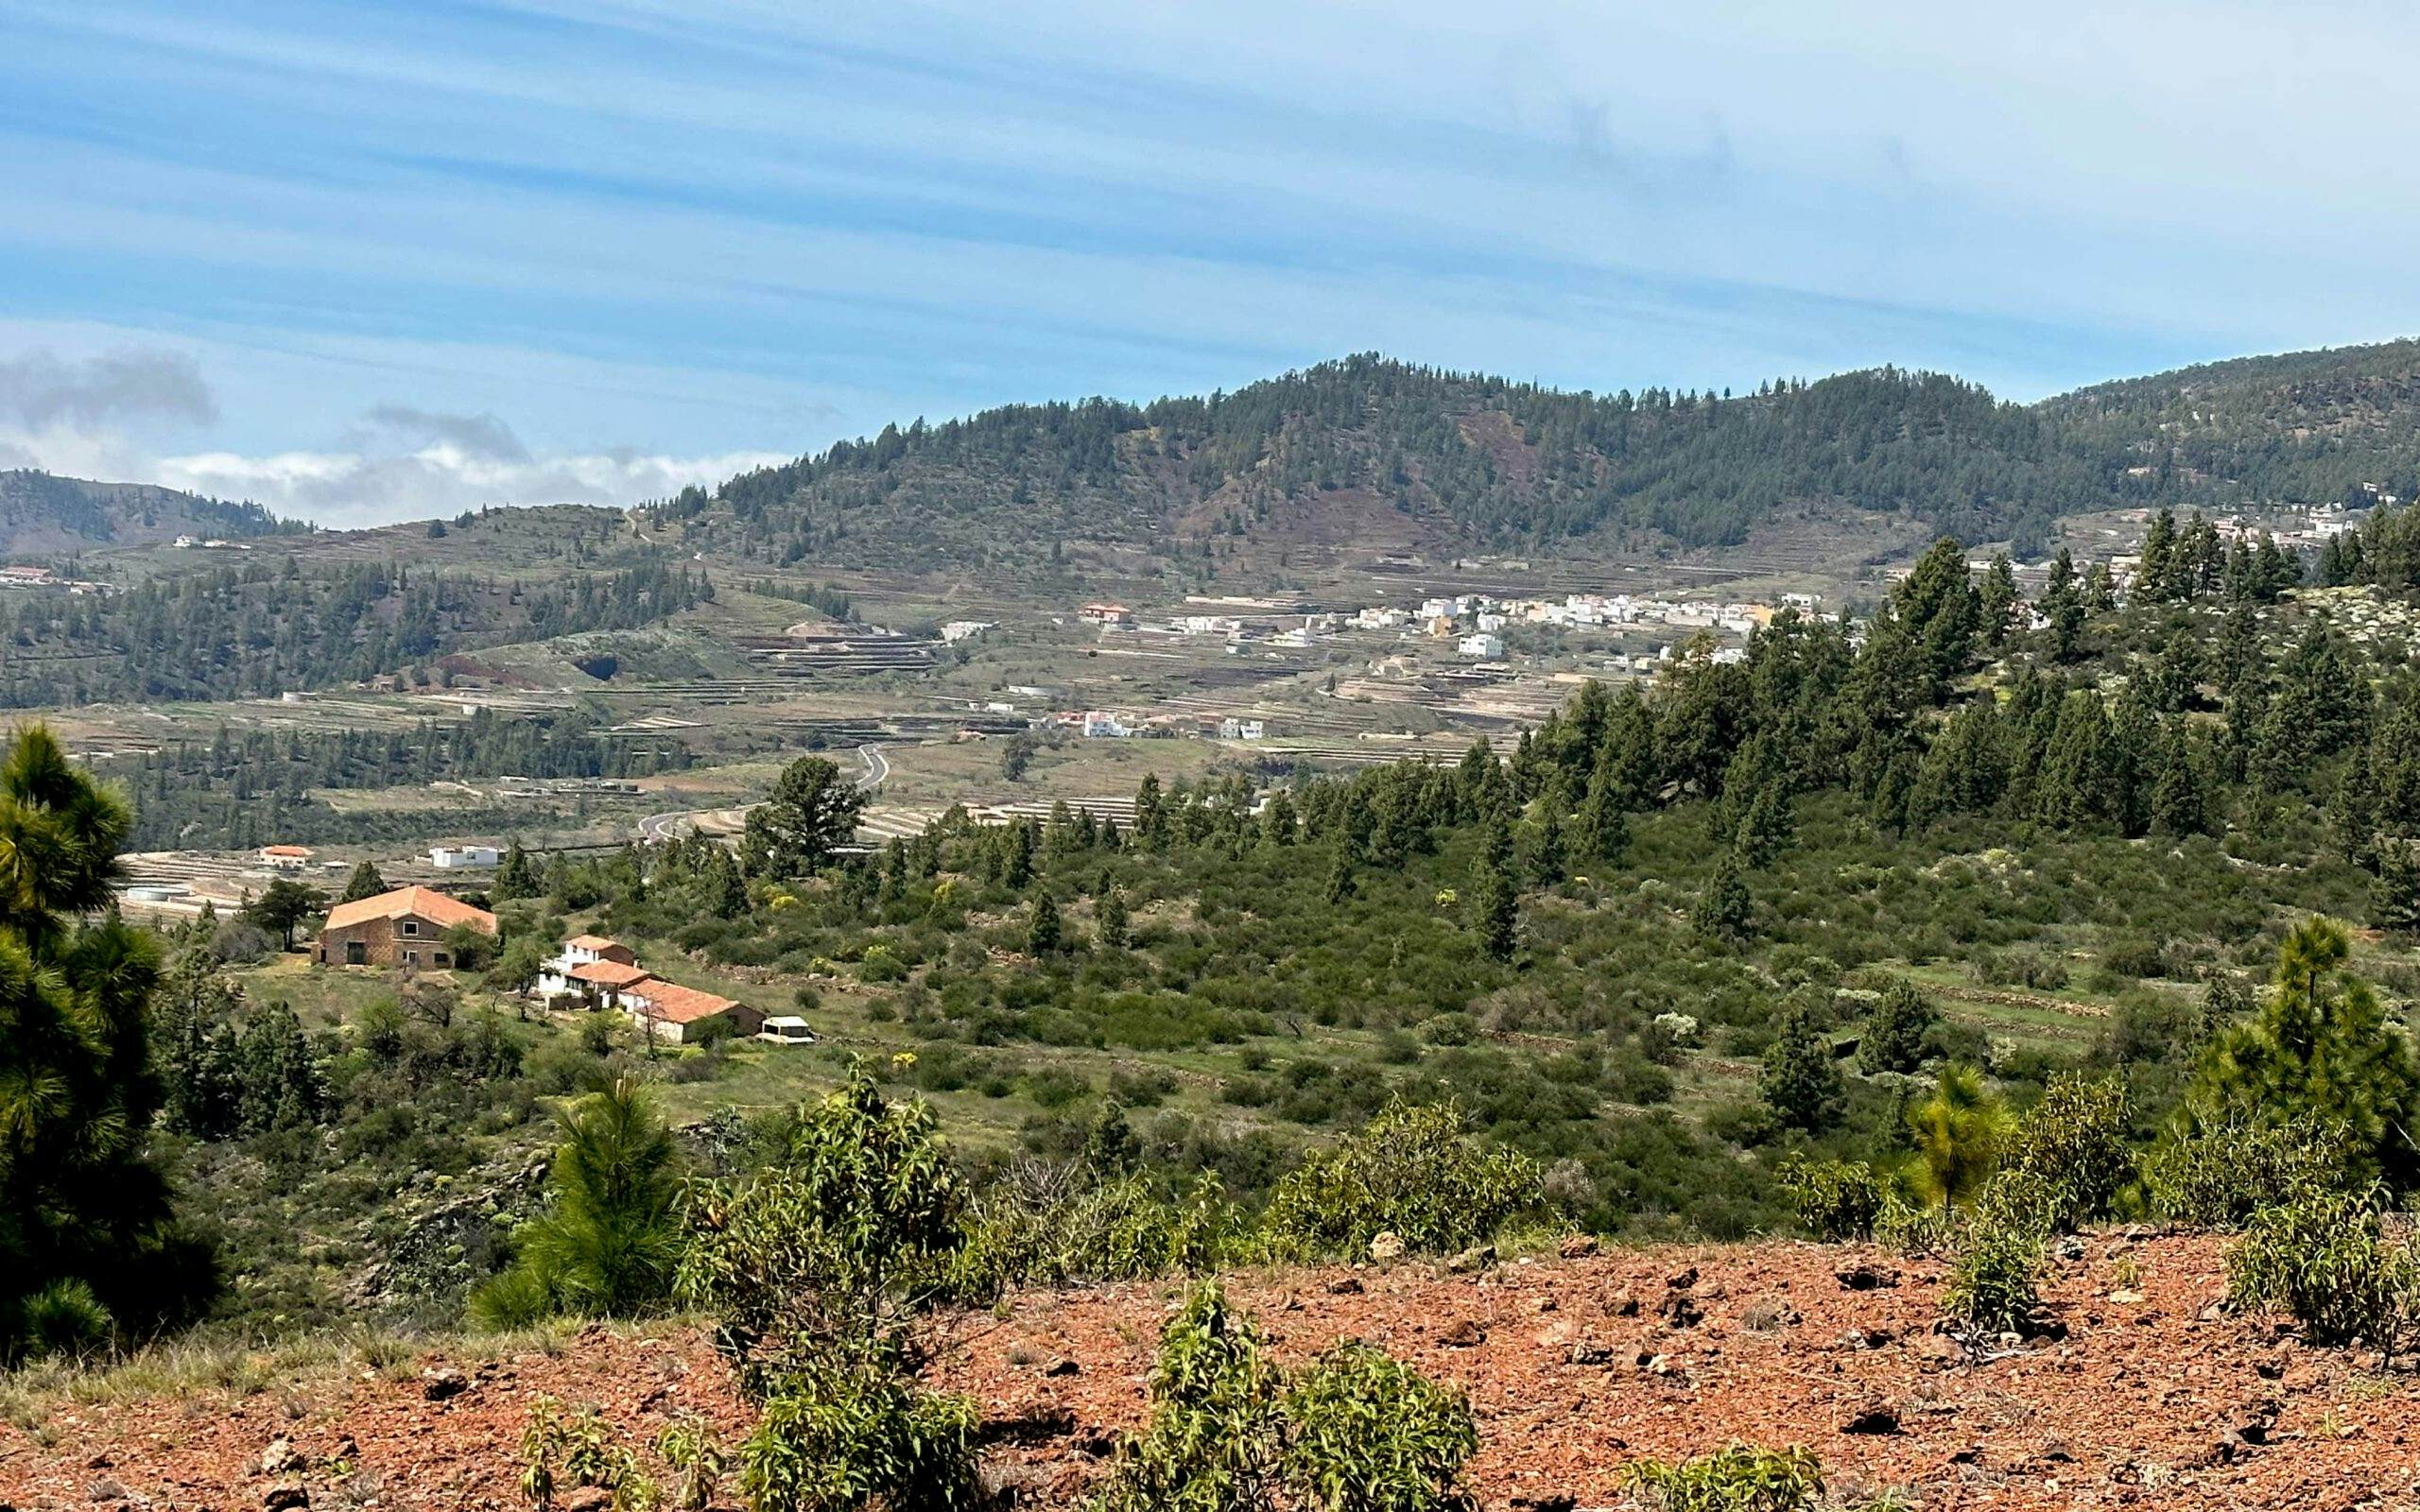 View from the Montaña Colorada towards Vilaflor